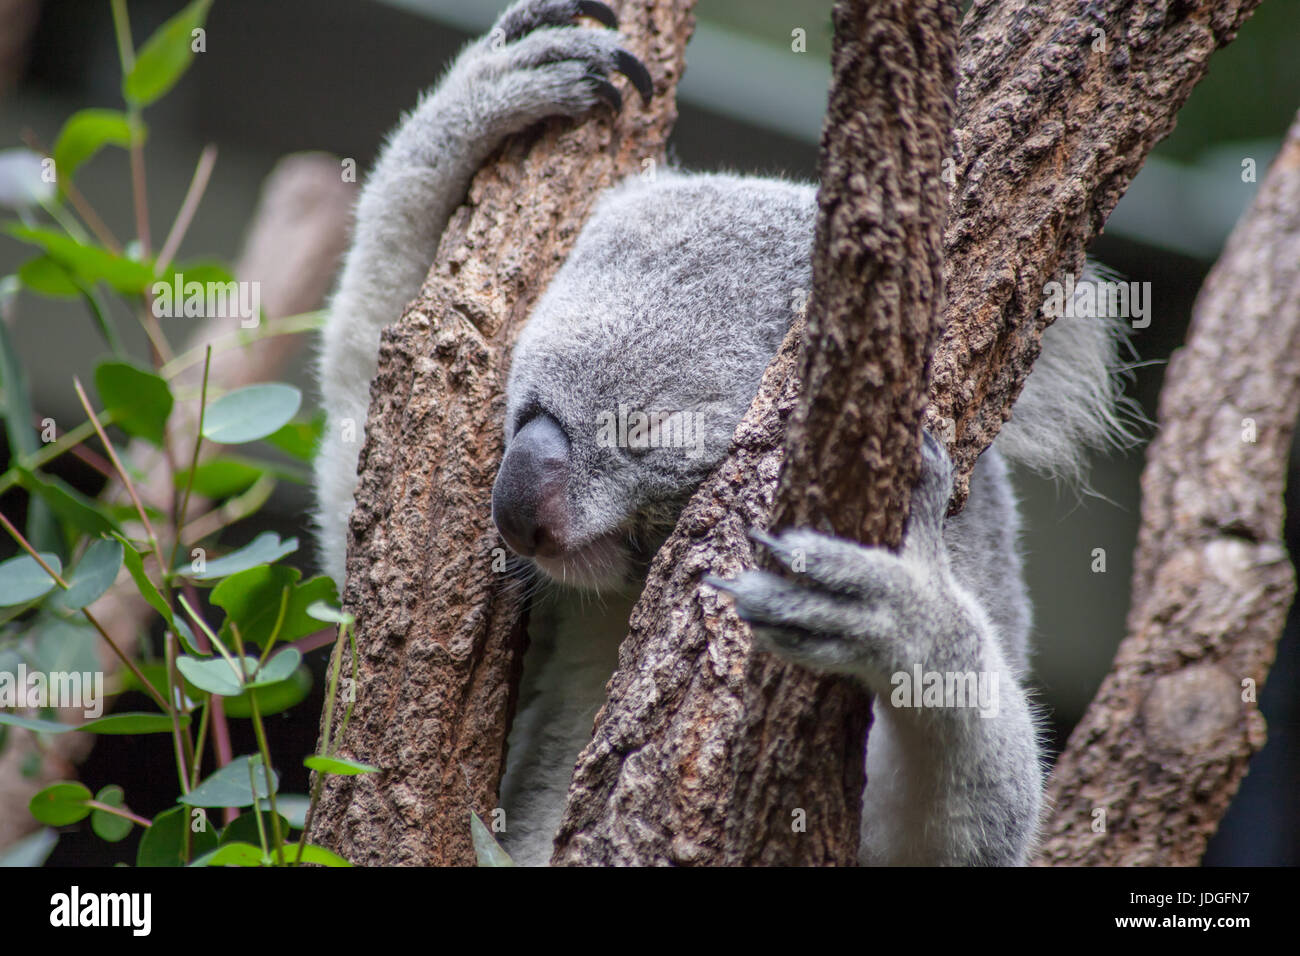 Portrait of a koala sleeping in a tree in Australia Zoo, Australia Stock Photo